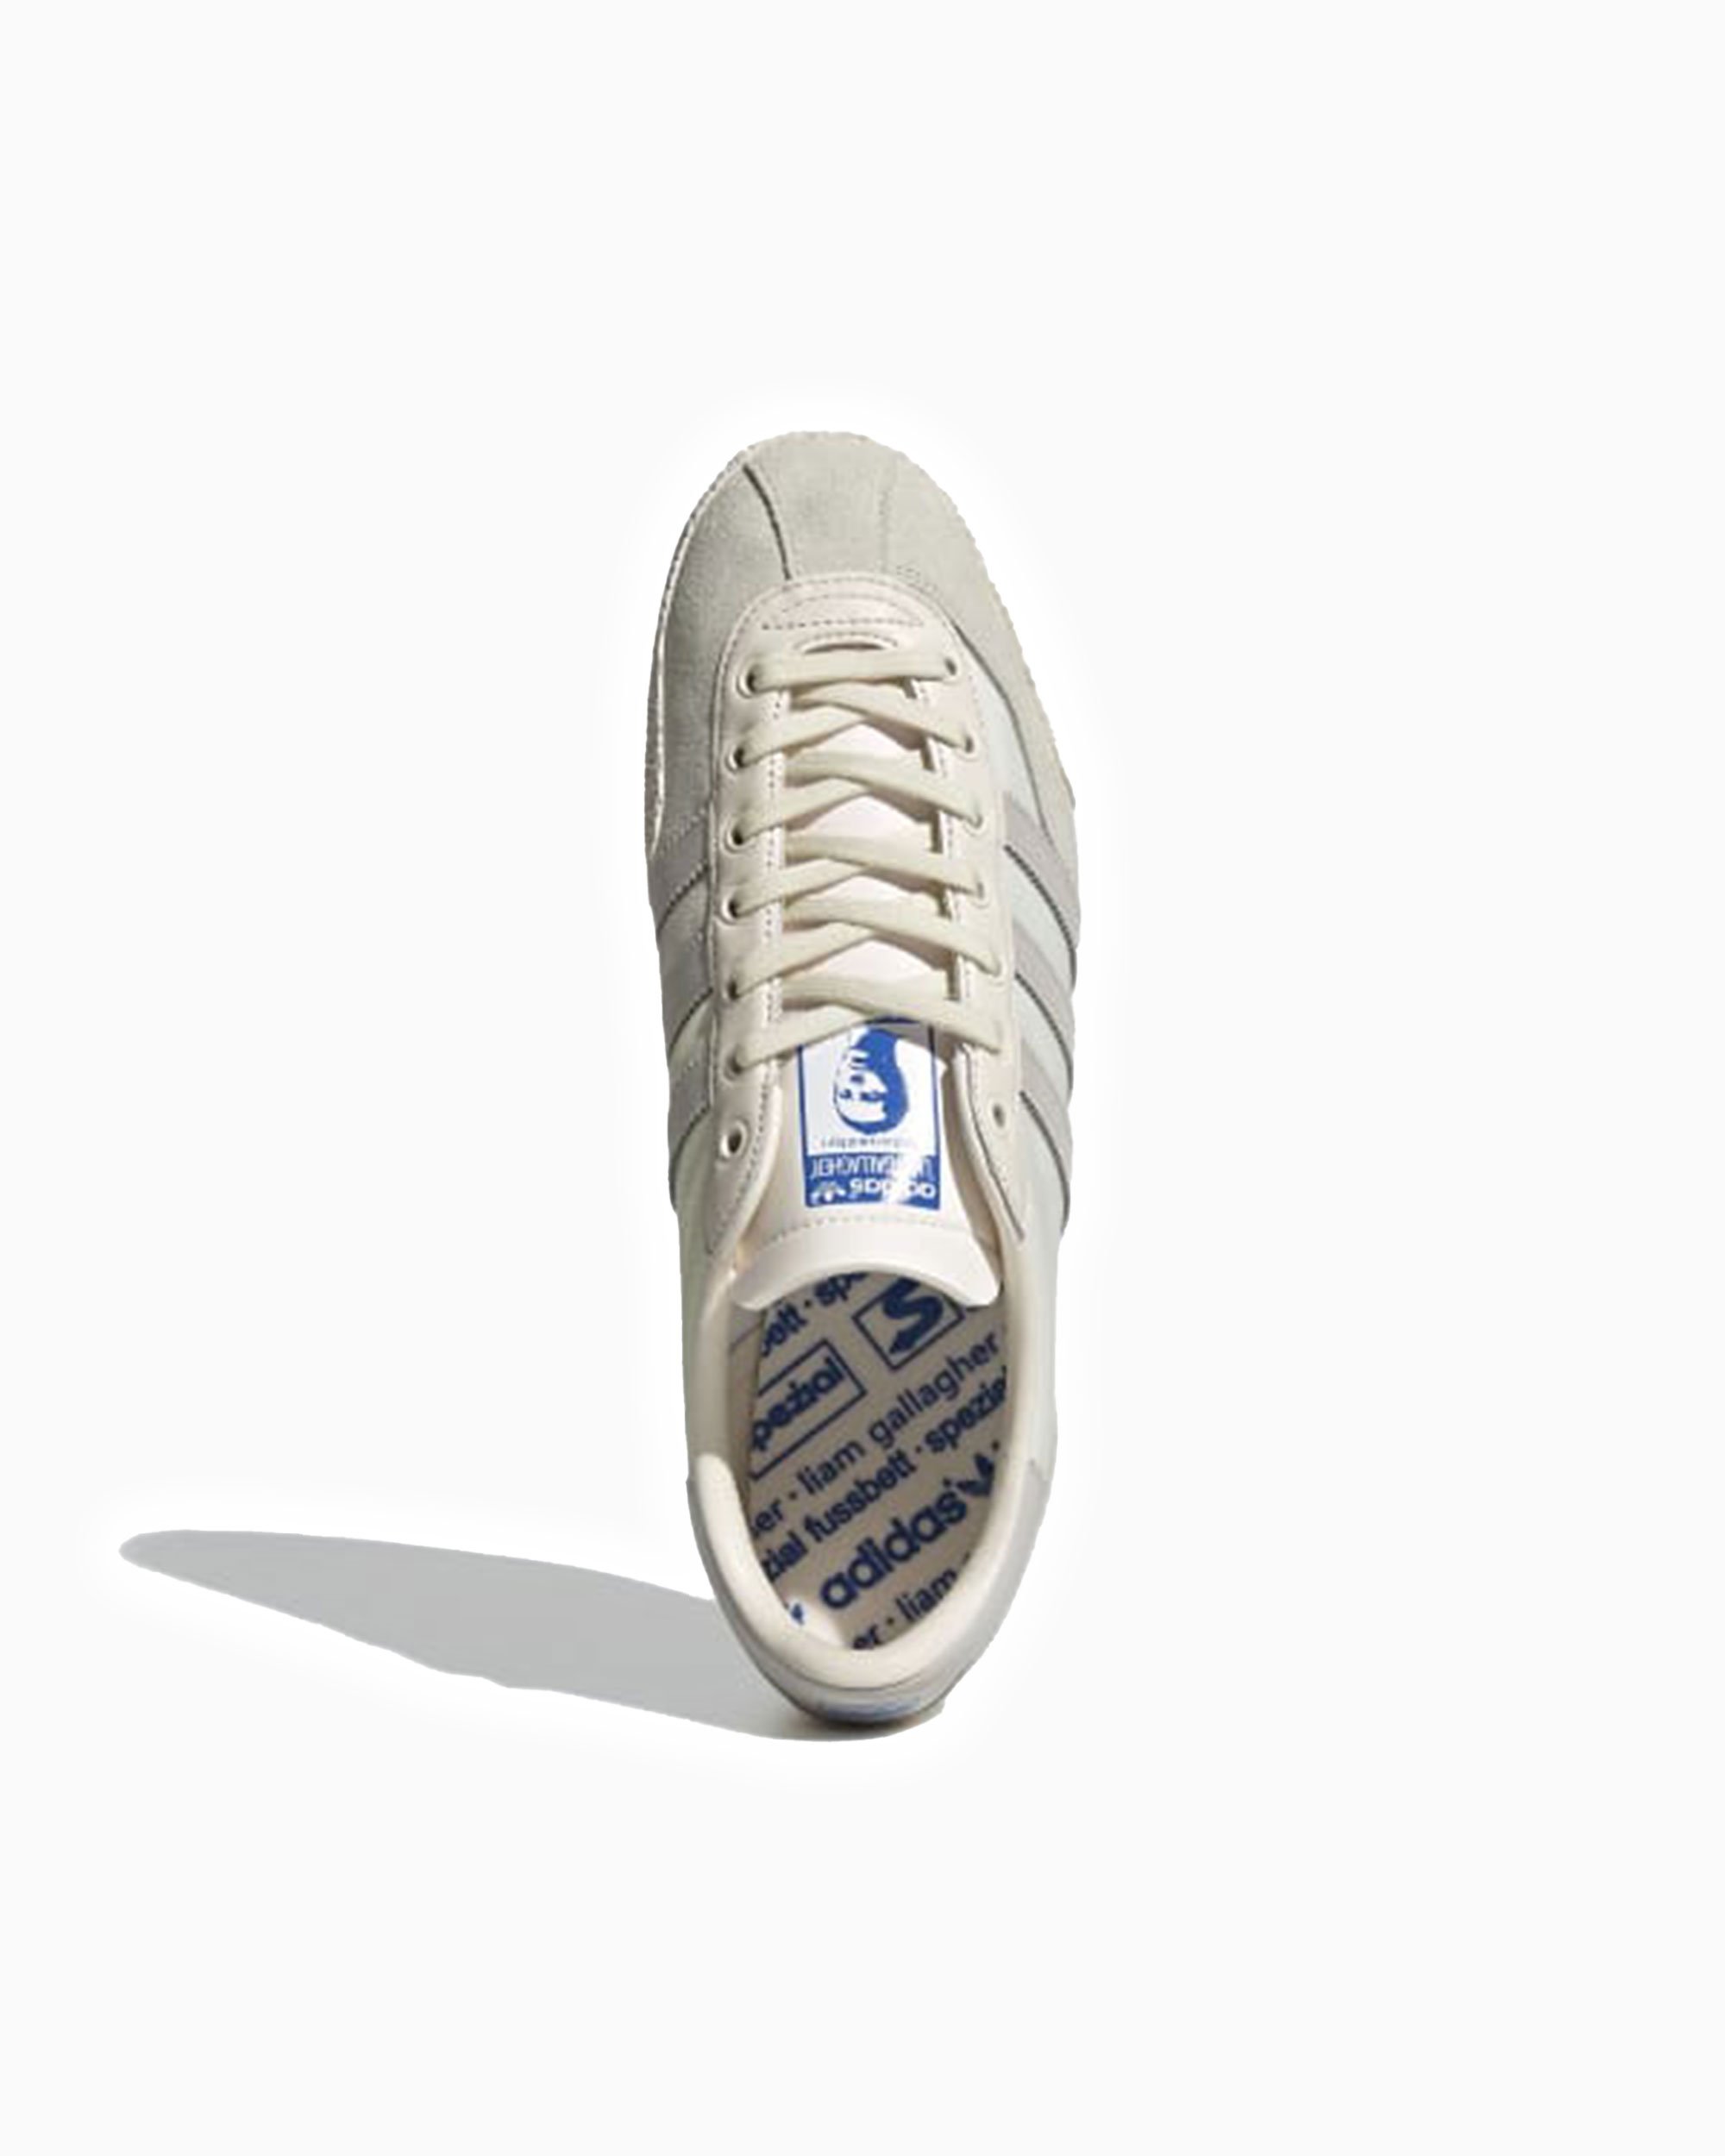 adidas x Liam Gallagher Spezial II Blanco GW3812| Comprar en FOOTDISTRICT